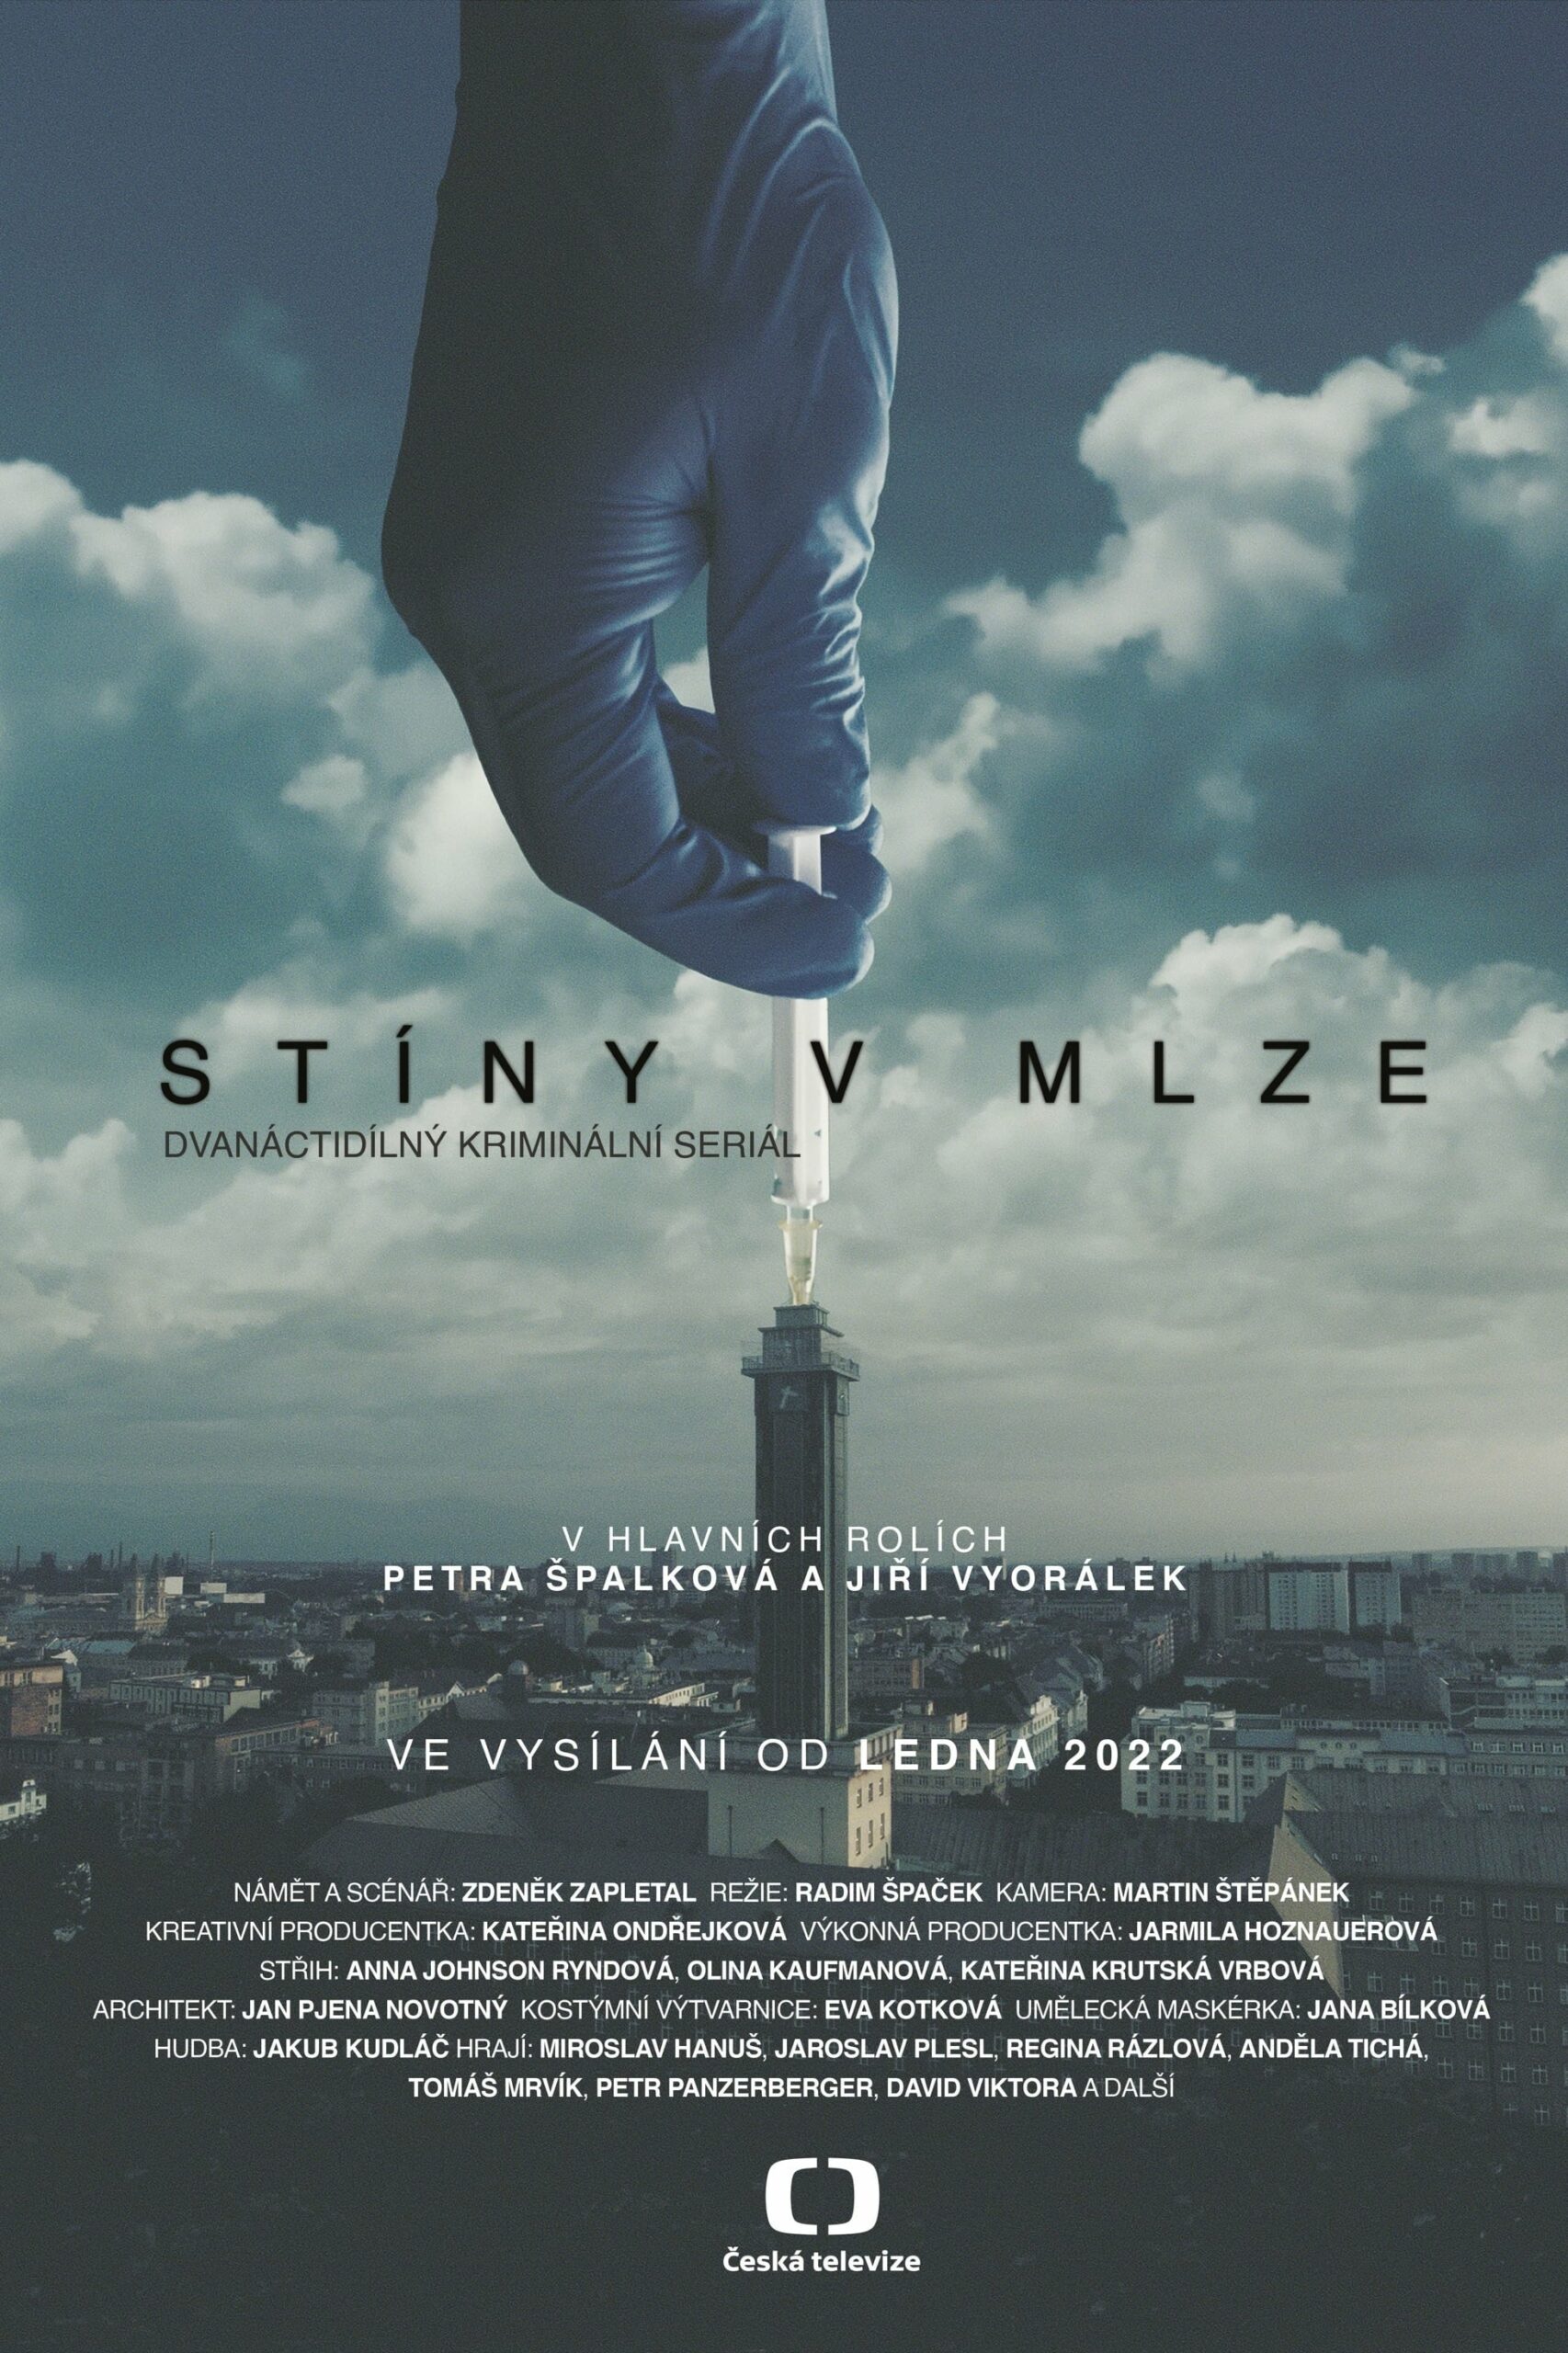 Plakát pro film “Stíny v mlze”